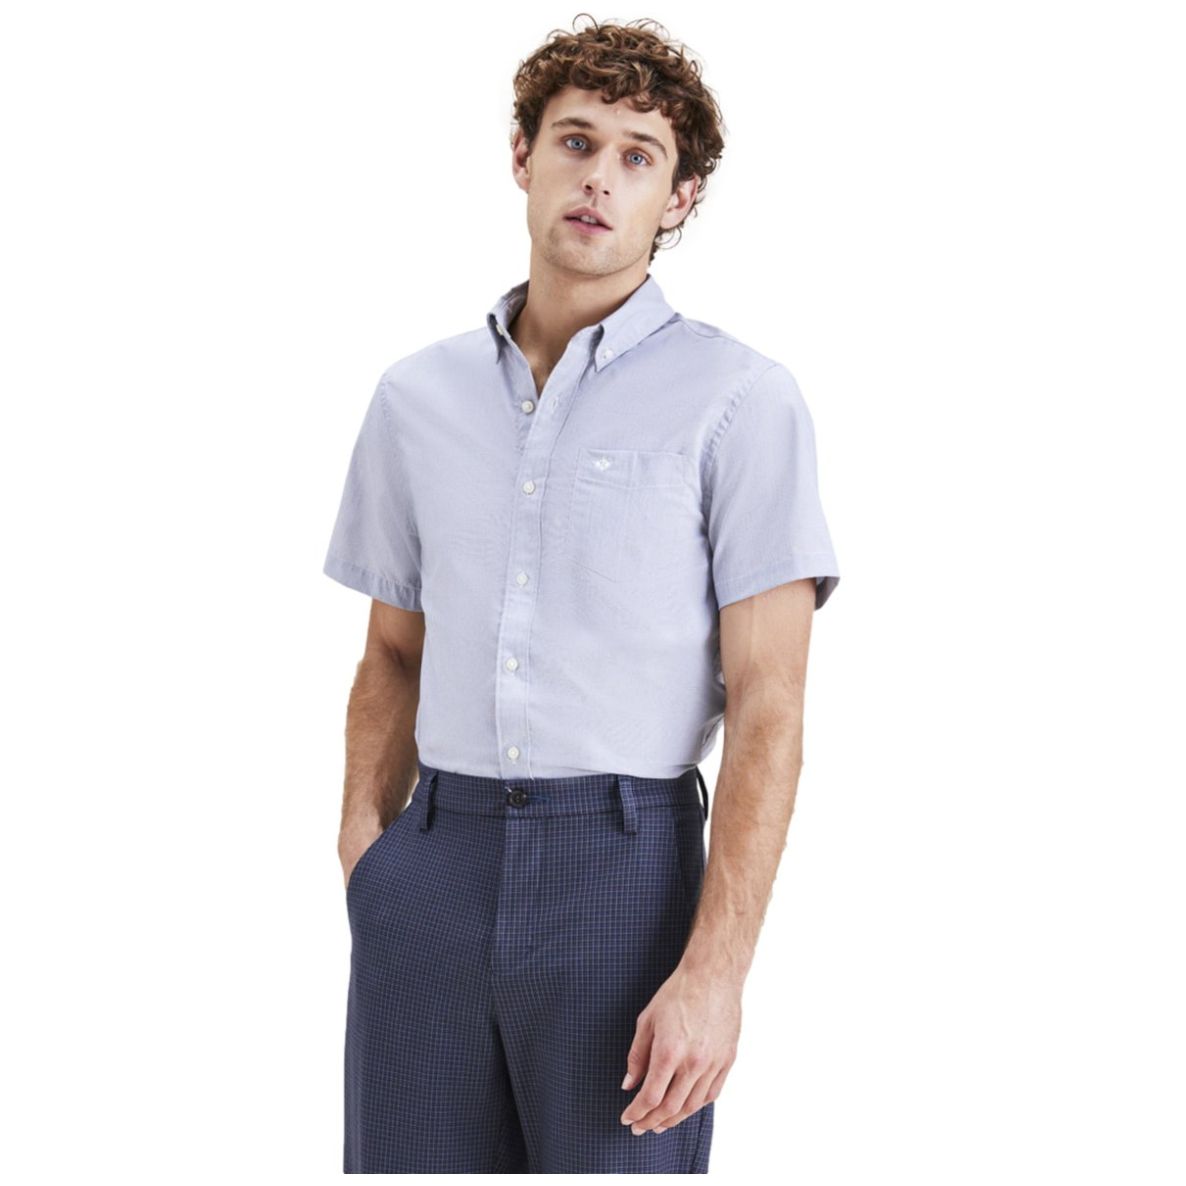 Signature Comfort Flex Shirt, Classic Fit – Dockers®